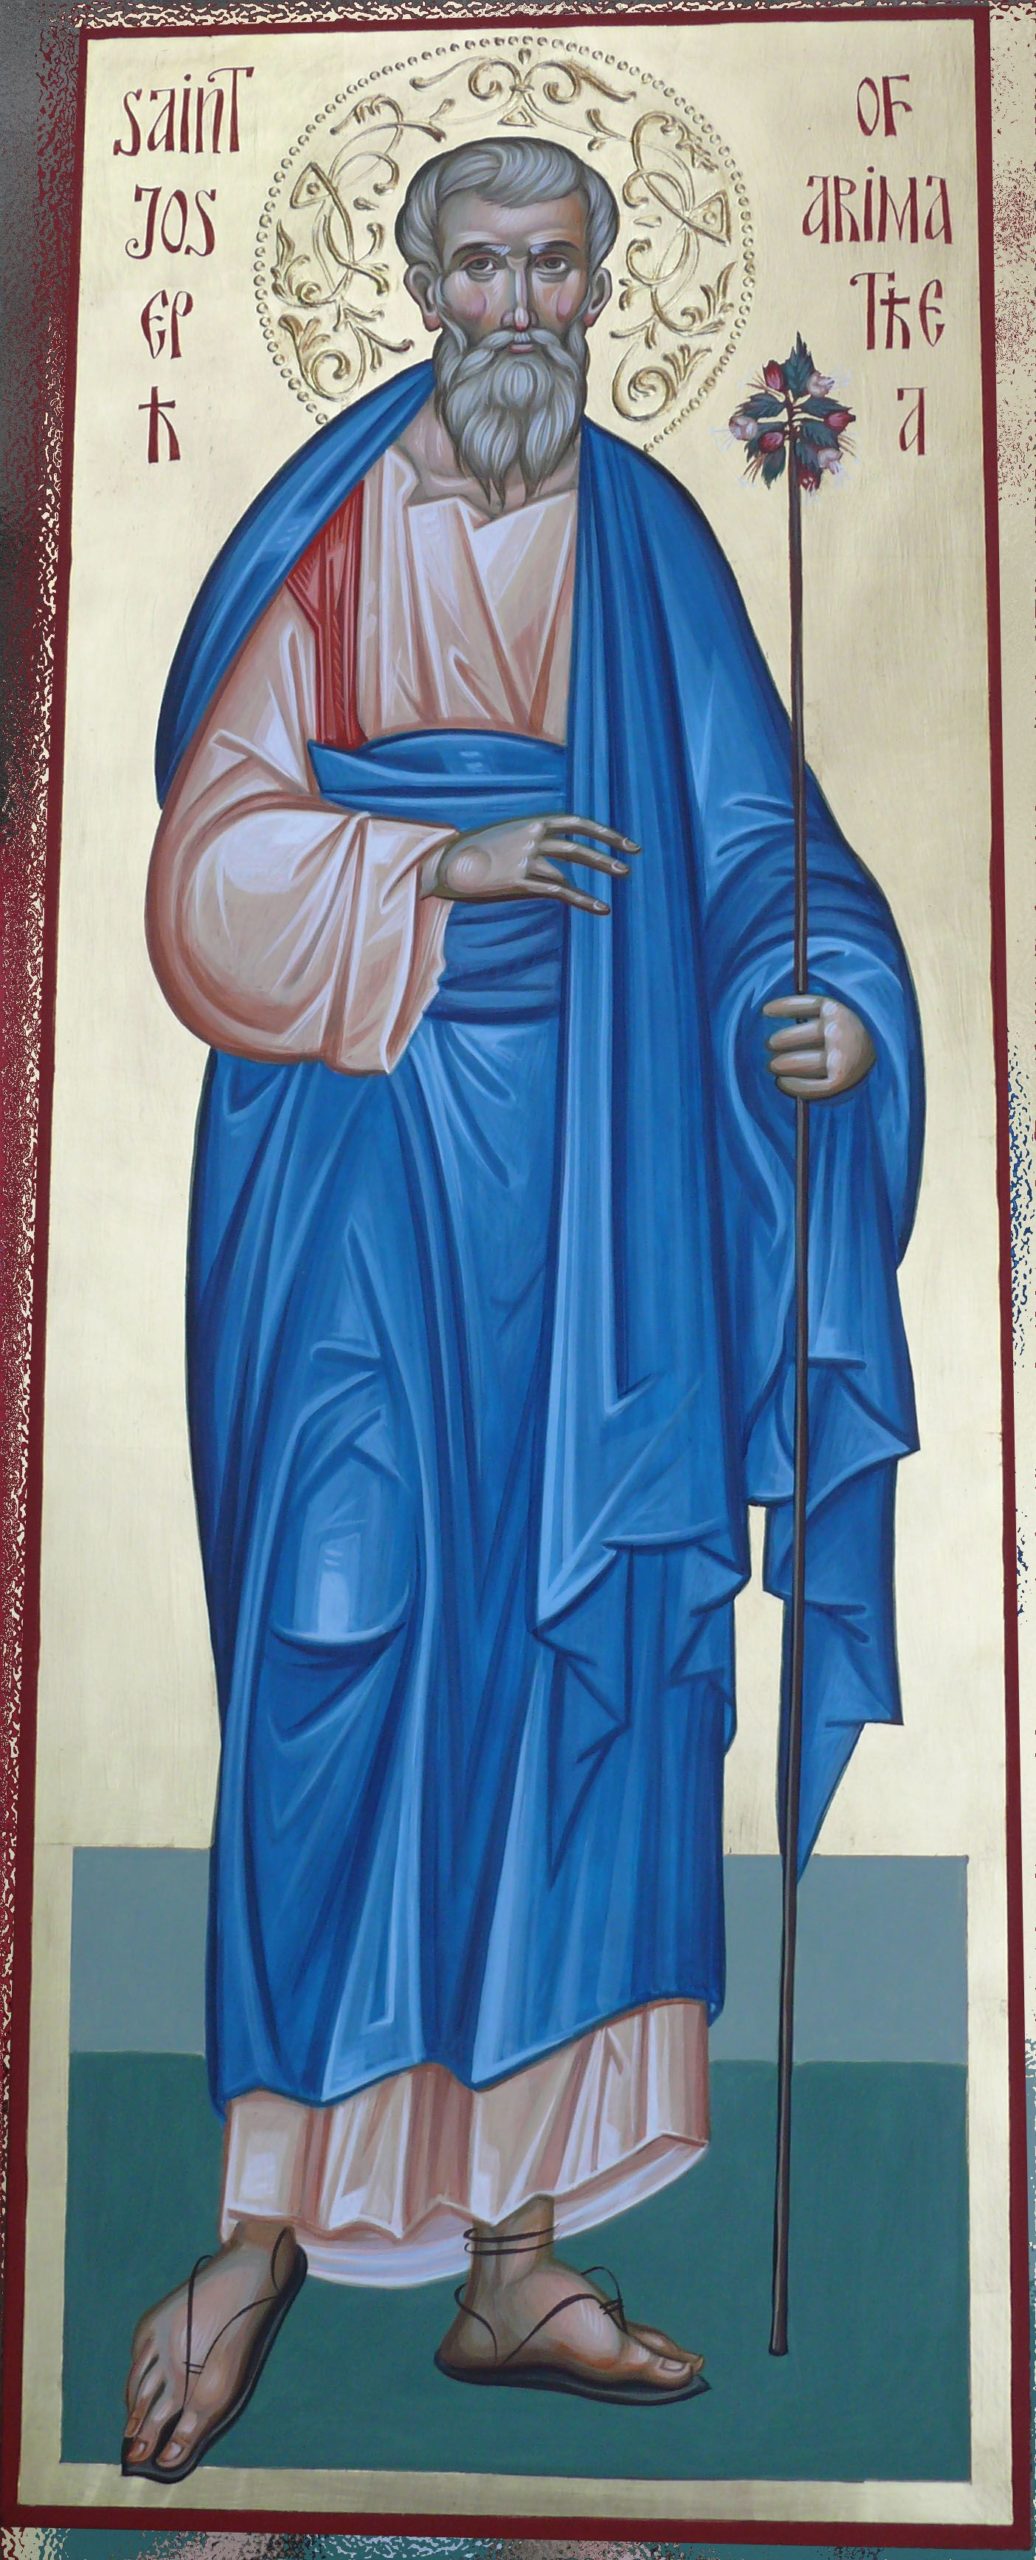 St. Joseph of Arimathaea